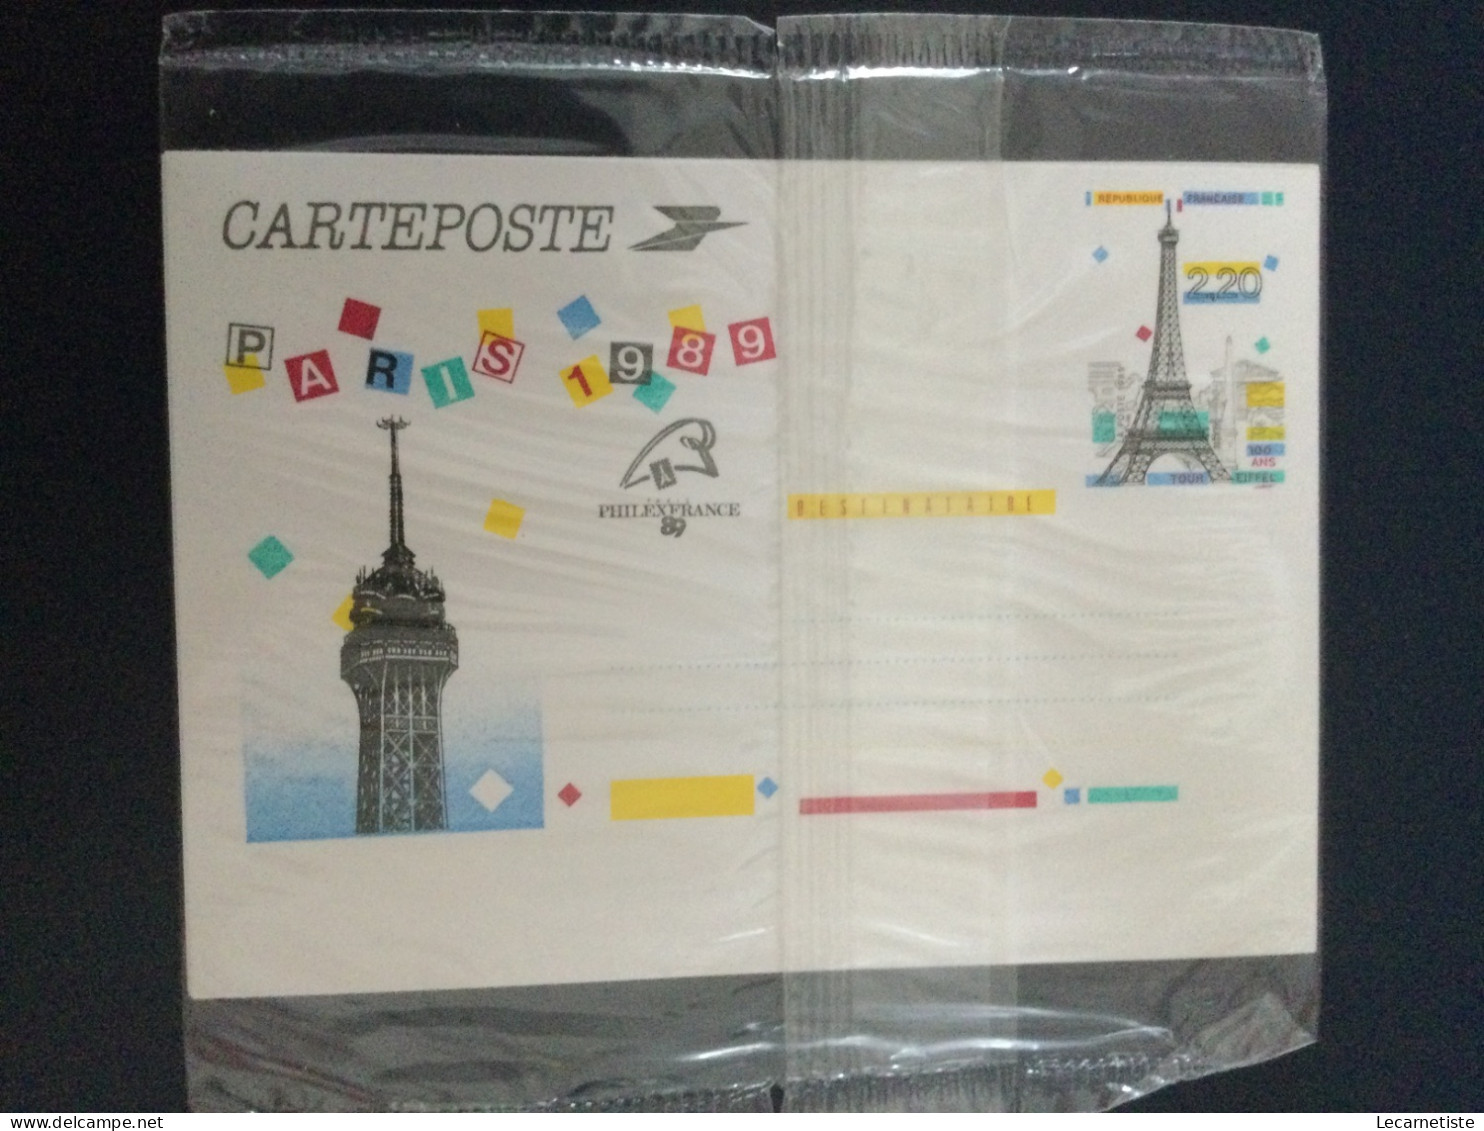 5 Cartes Postales Carteposte 1989 Sous Blister - Konvolute: Ganzsachen & PAP